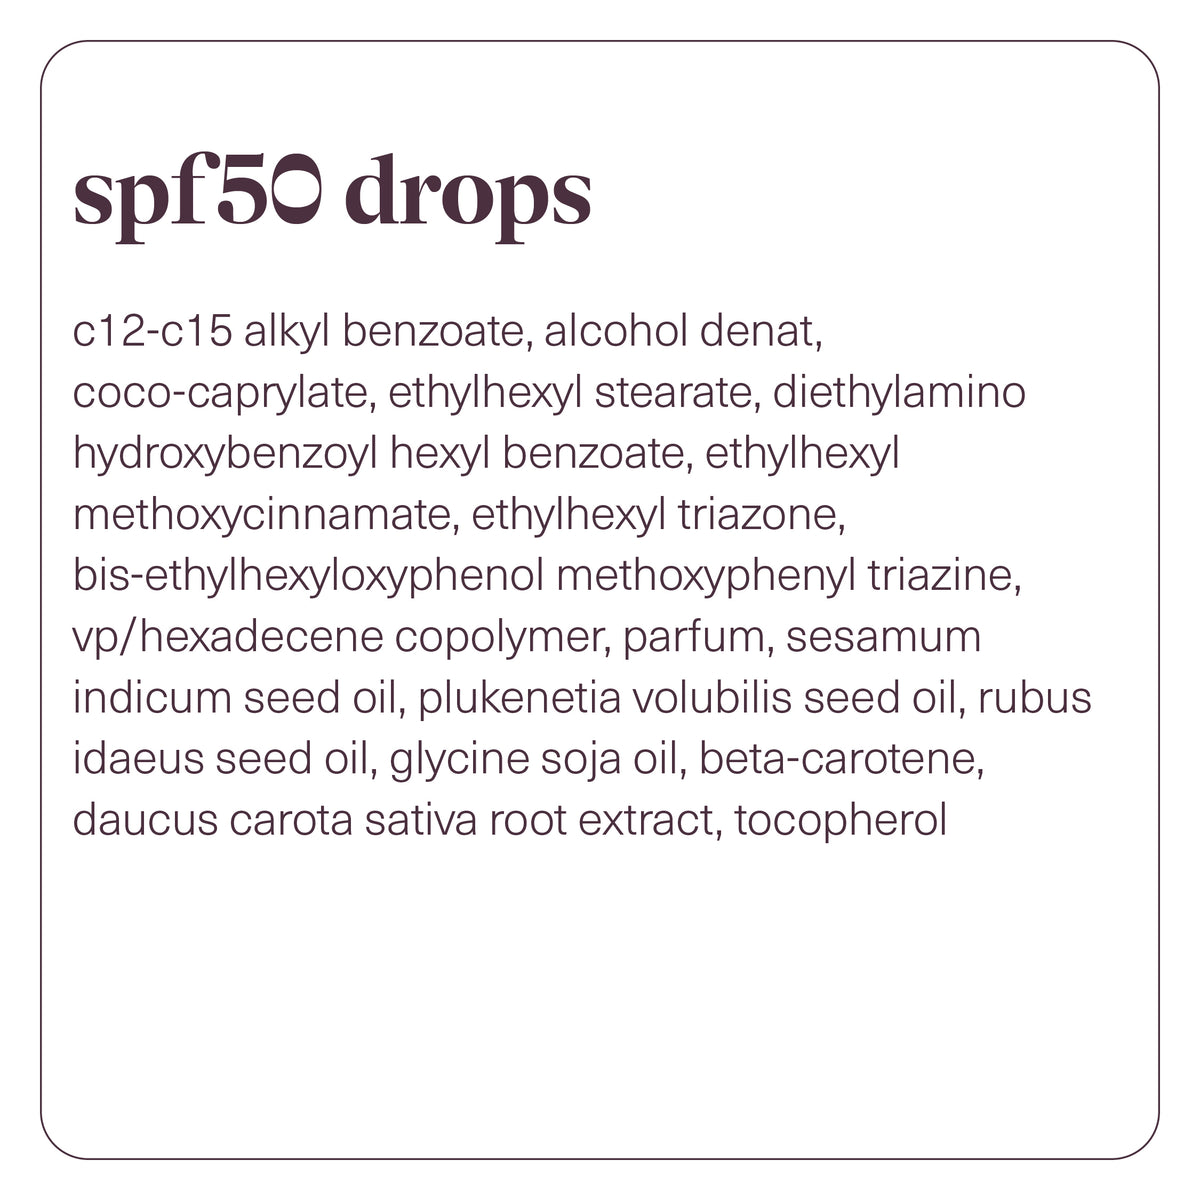 spf 50 drops